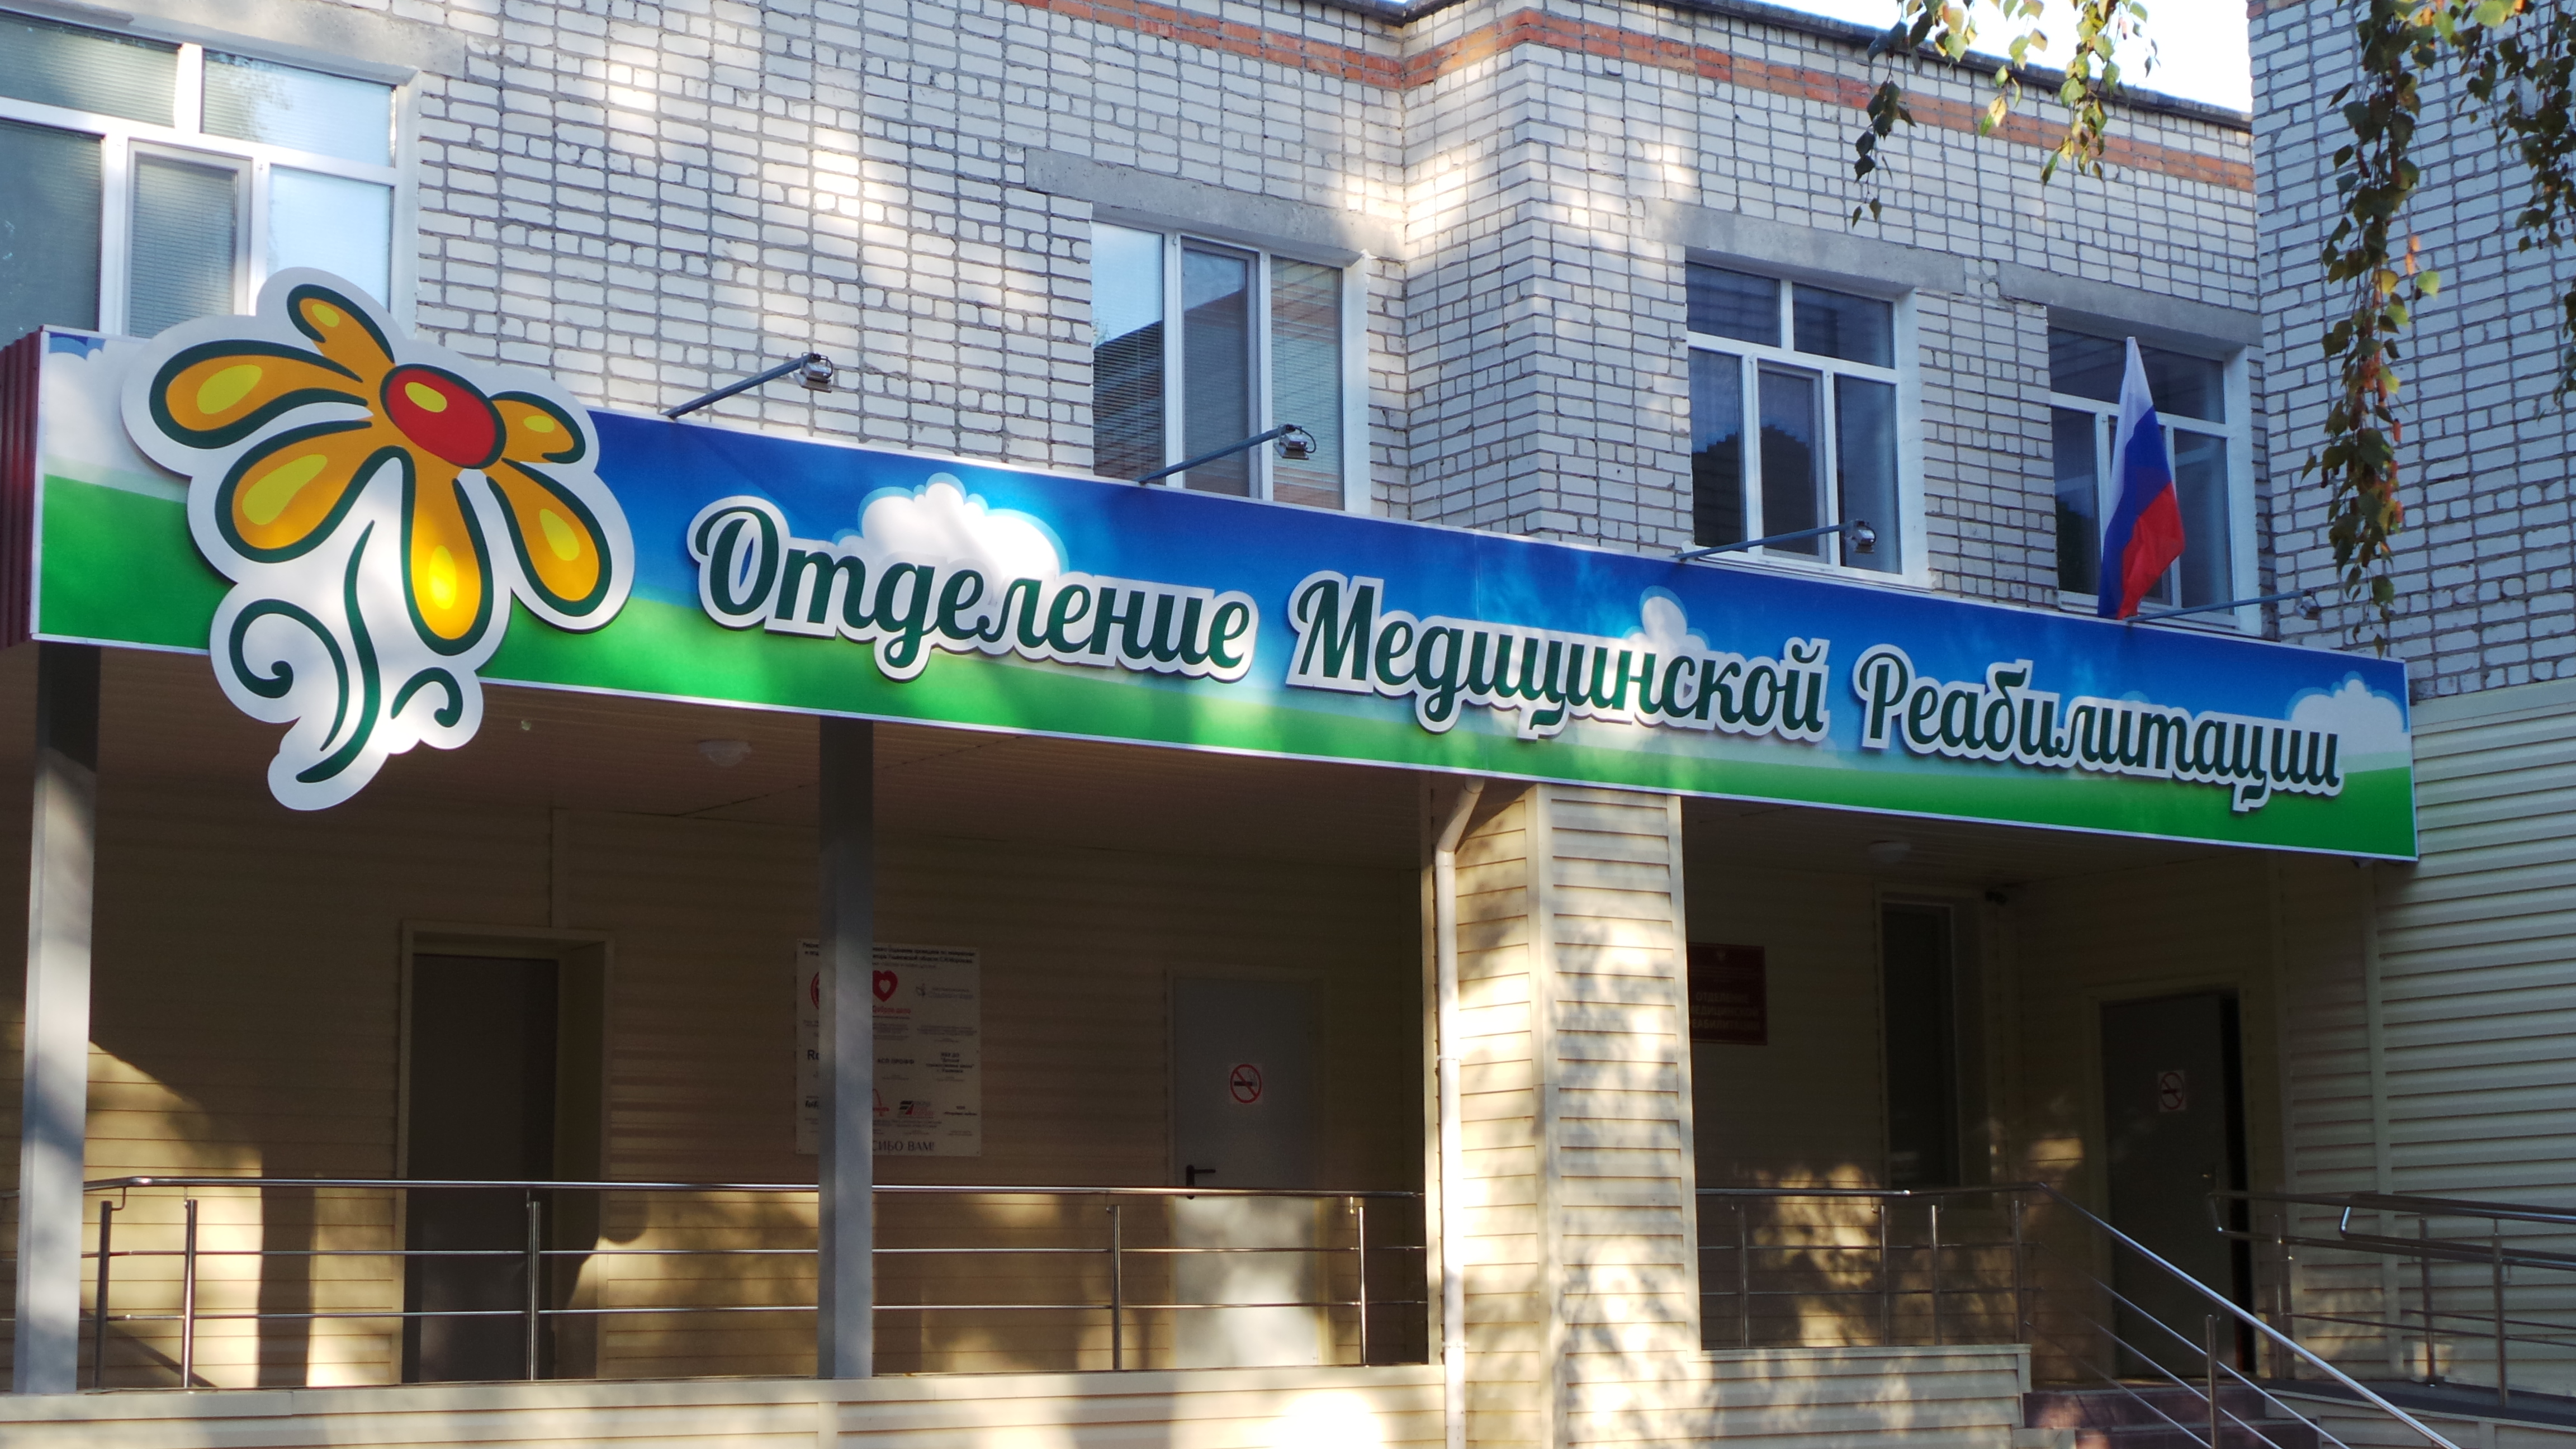 Врач областной детской больницы Елена Белькова рассказала об отделении медицинской реабилитации учреждения